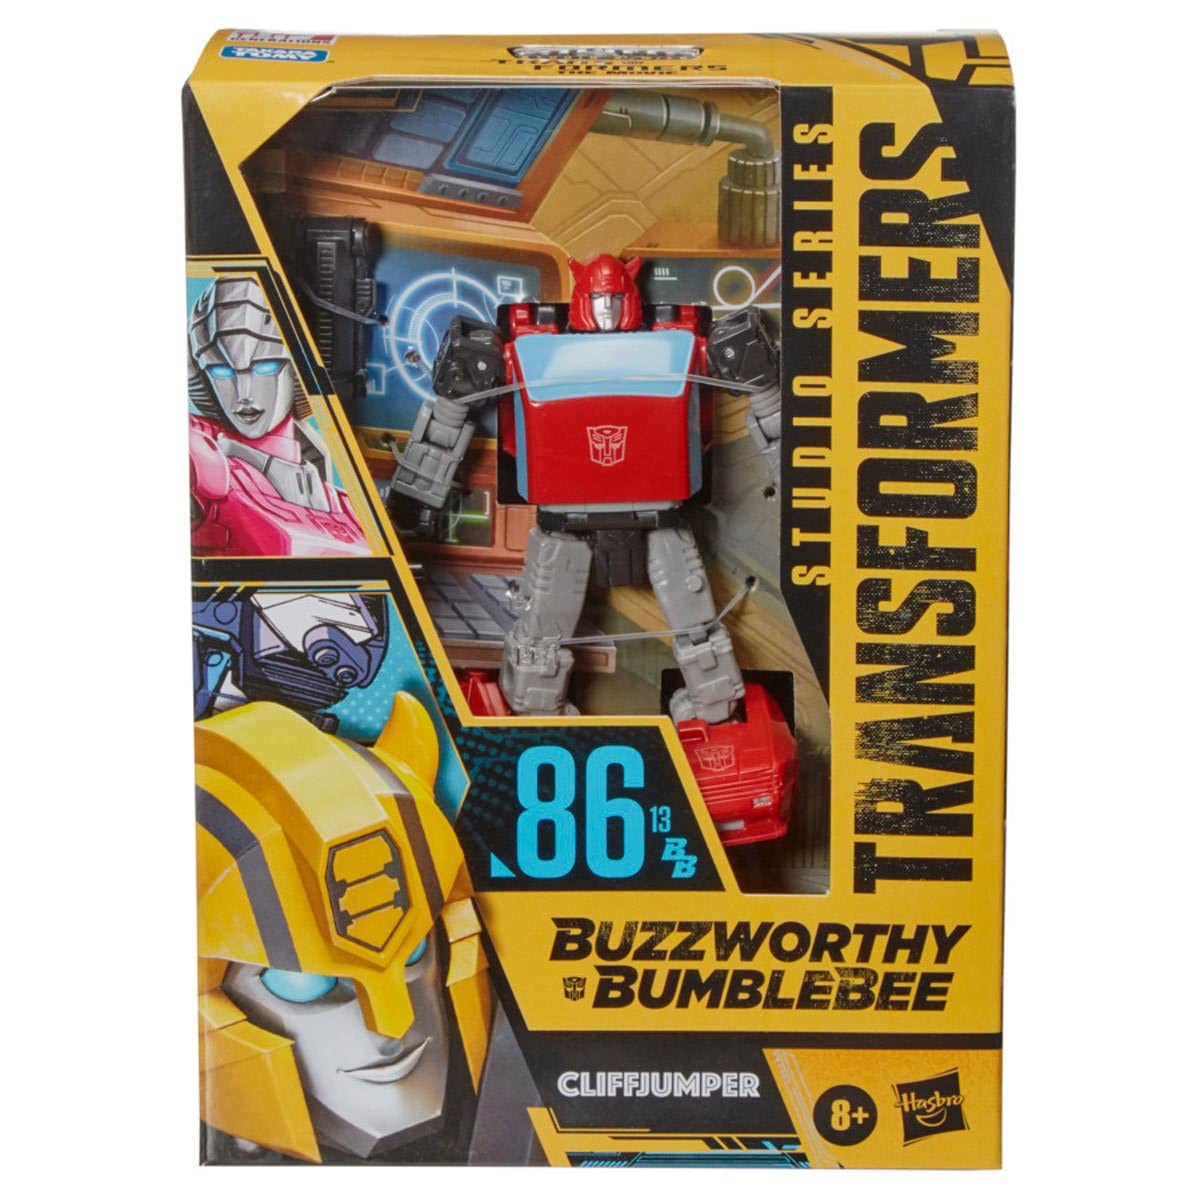 Transformers Buzzworthy Bumblebee Studio Series Cliffjumper Deluxe Action Figure